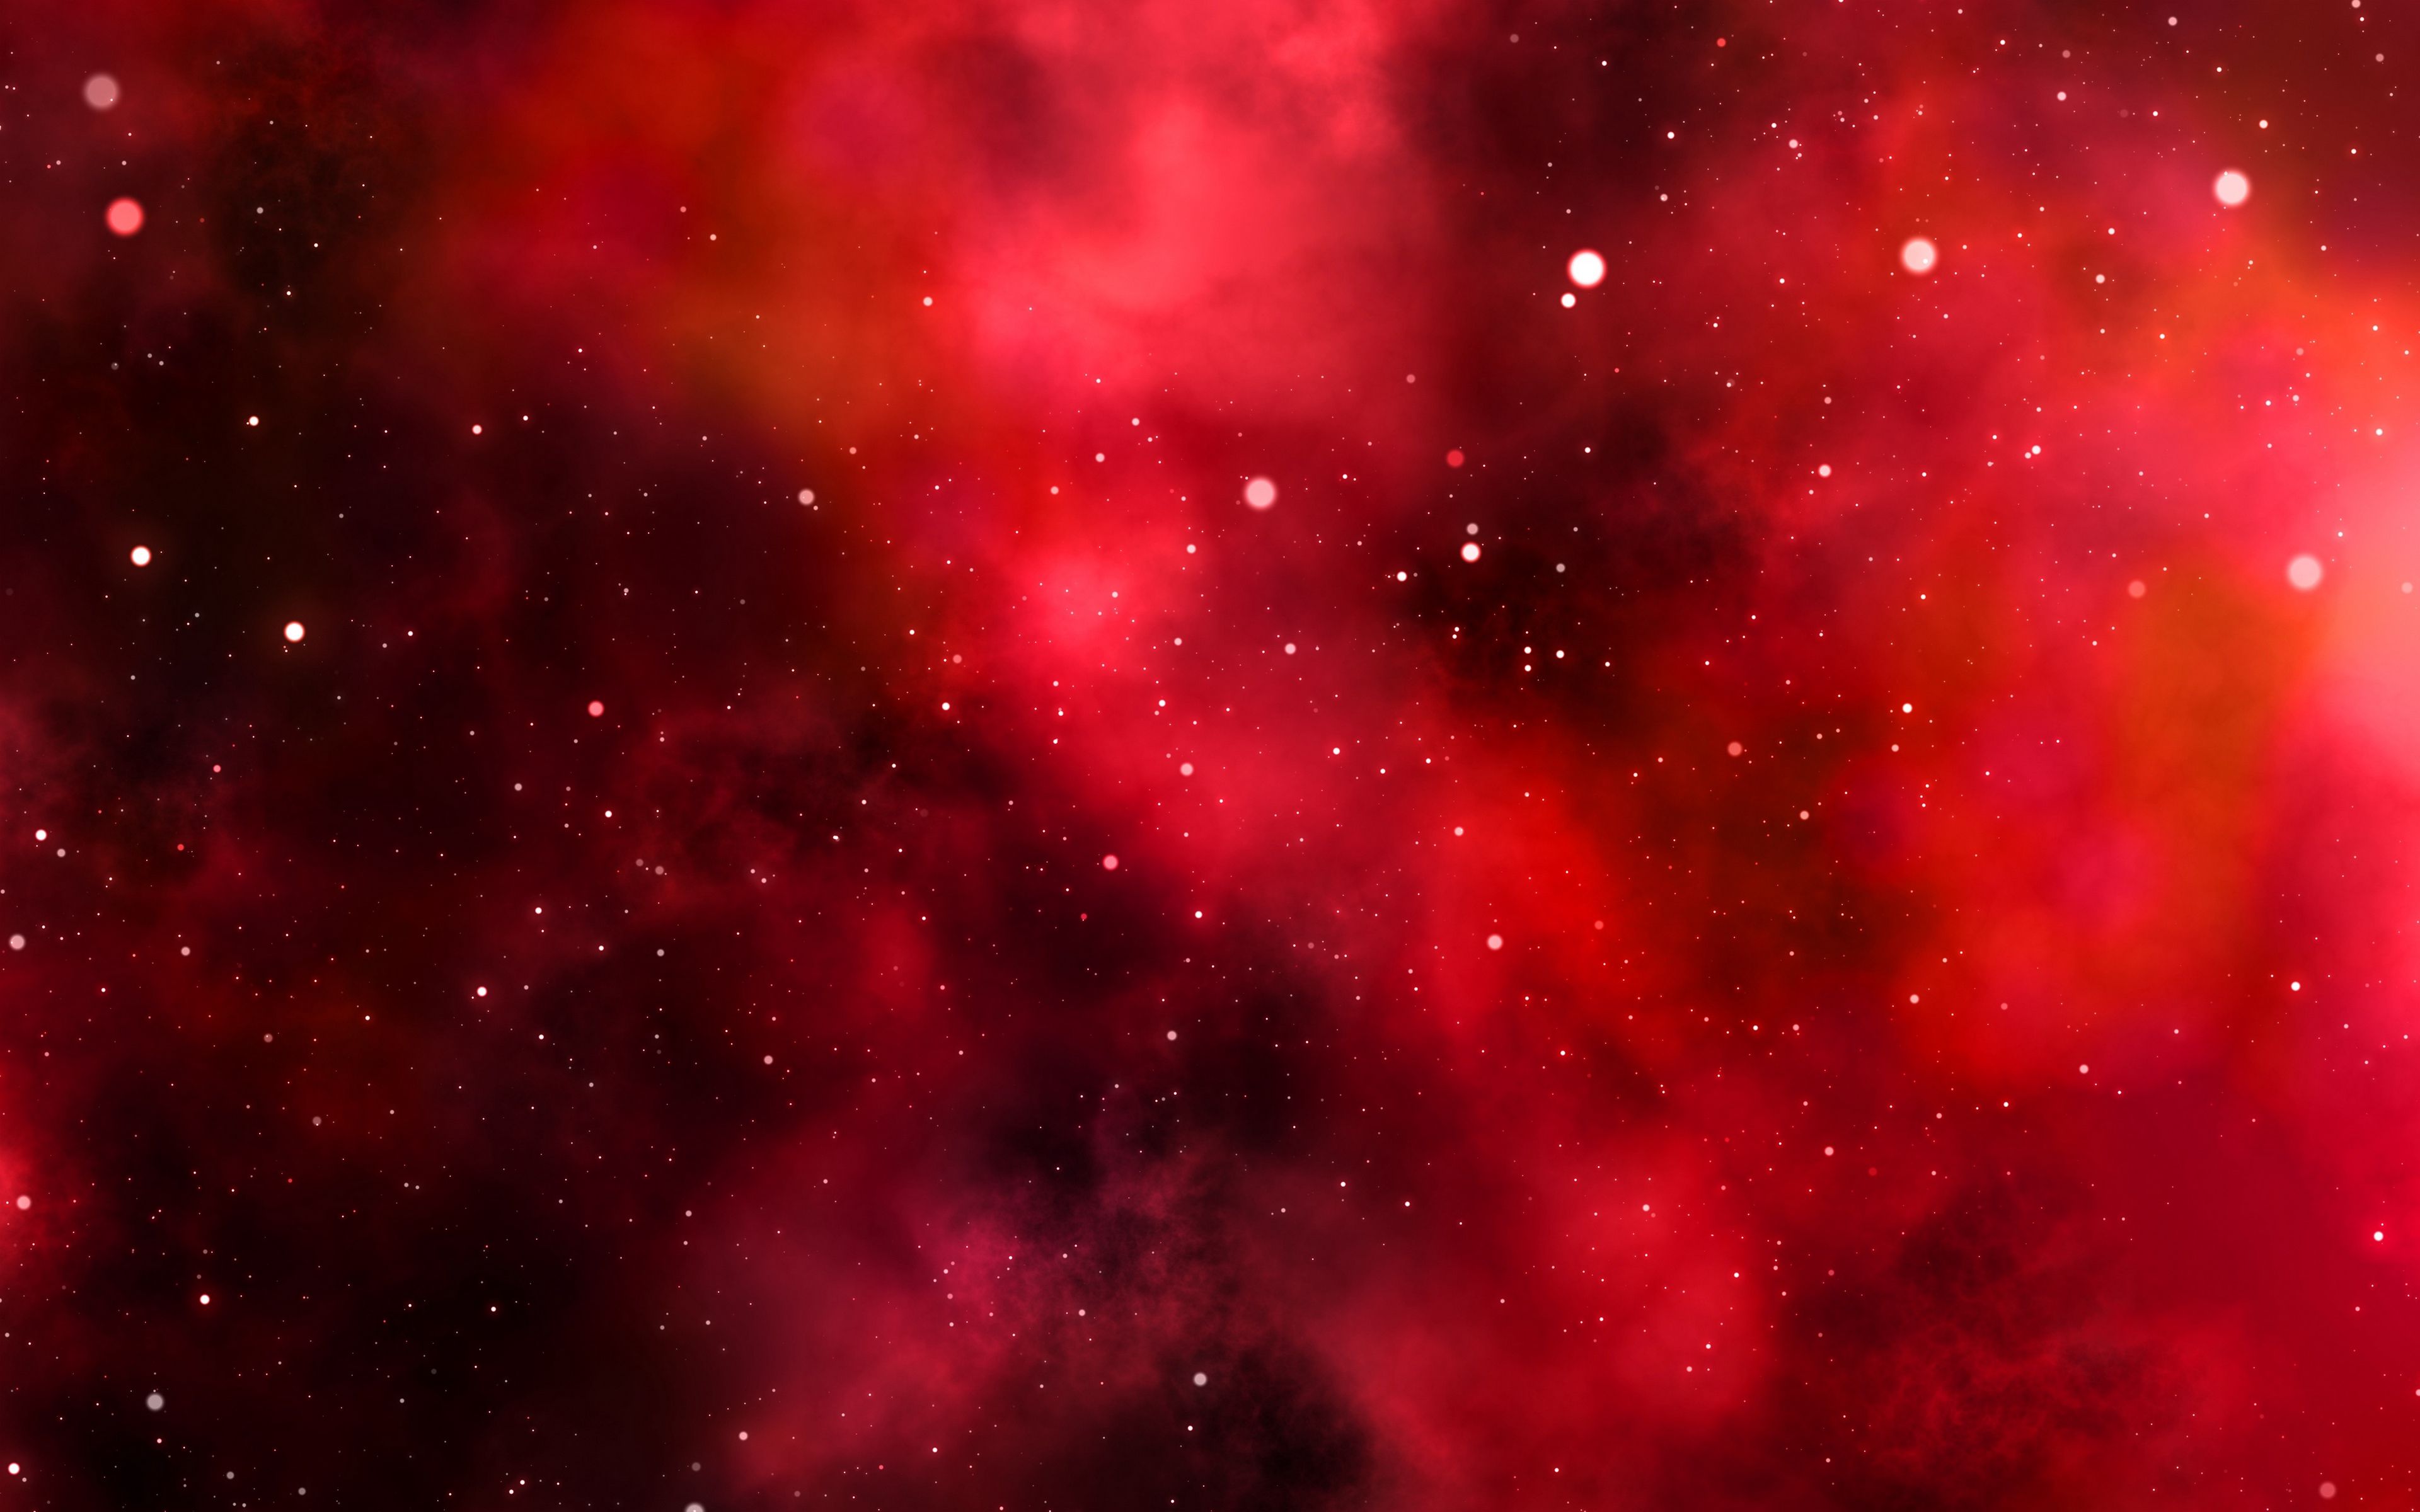 Hình nền 4k đỏ xanh vũ trụ sẽ đưa bạn vào một không gian thần tiên đầy ma mị và bất ngờ. Đừng bỏ lỡ cơ hội để có một trải nghiệm tuyệt vời của những hình ảnh độc đáo này!